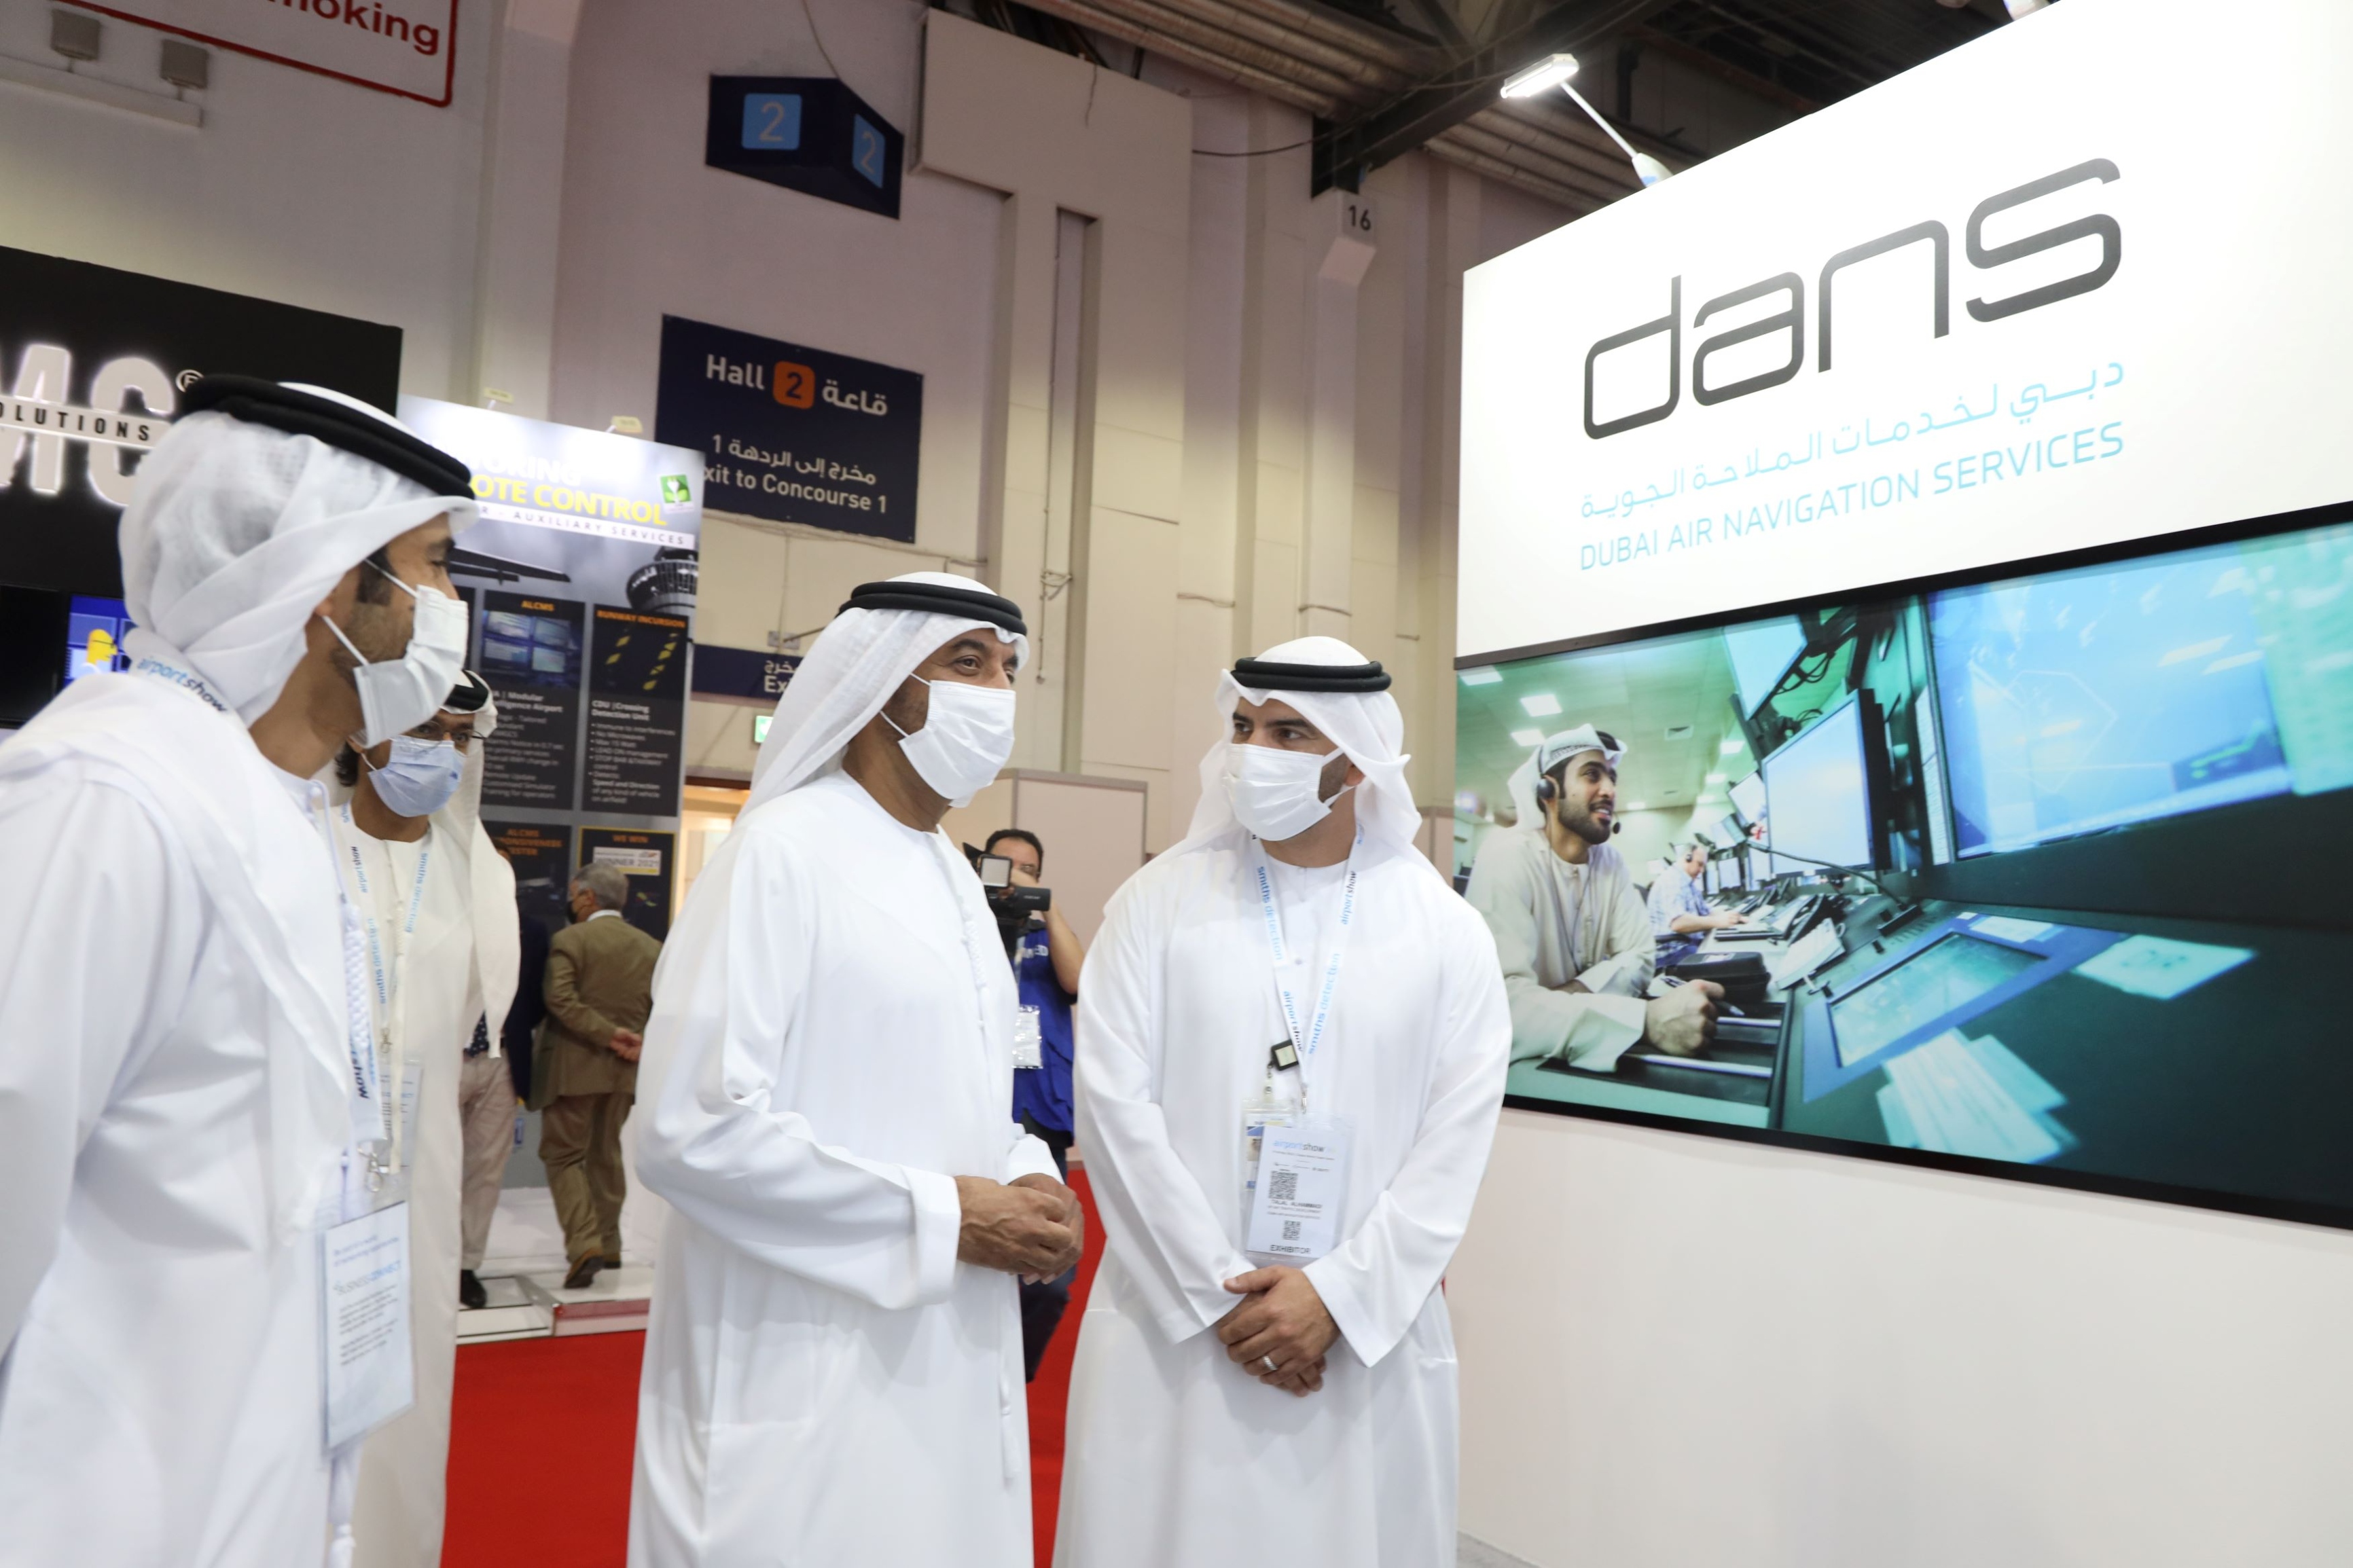 أحمد بن سعيد يطلع على إنجازات مؤسسة دبي لخدمات الملاحة الجوية